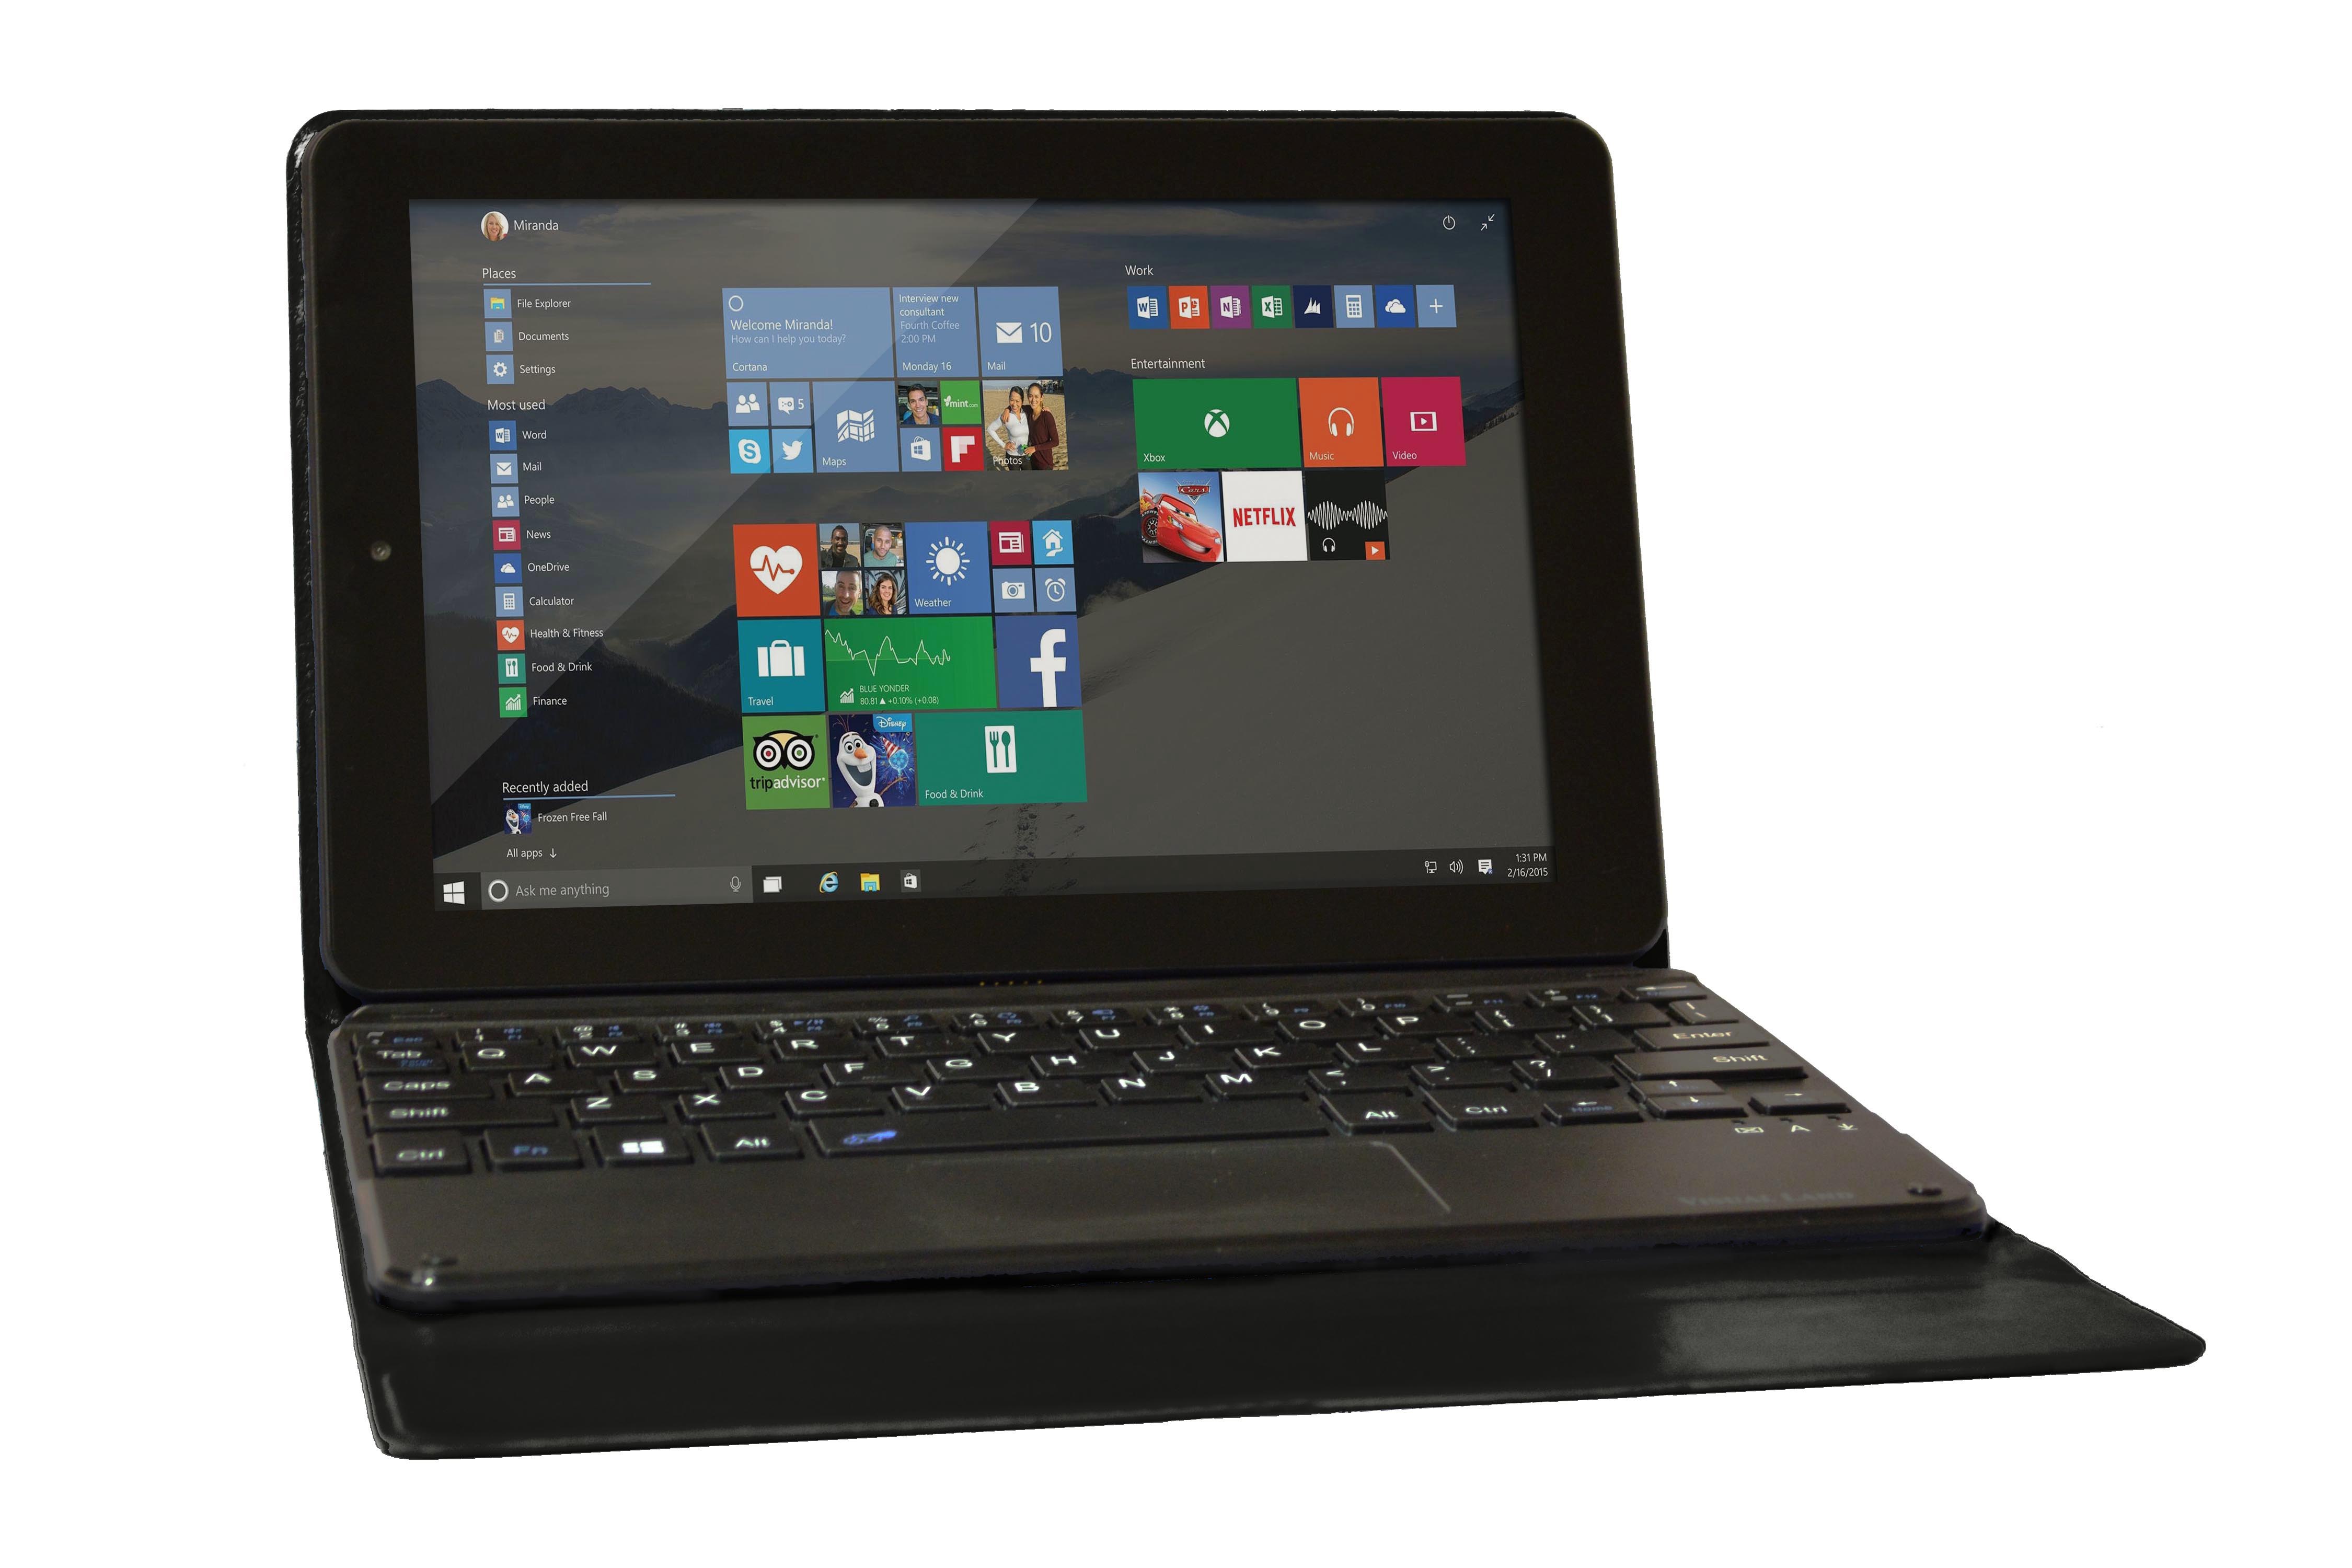 Visual Land ME9W32GBBLK Premier 9 Quad-Core 32GB Windows 10 Tablet with